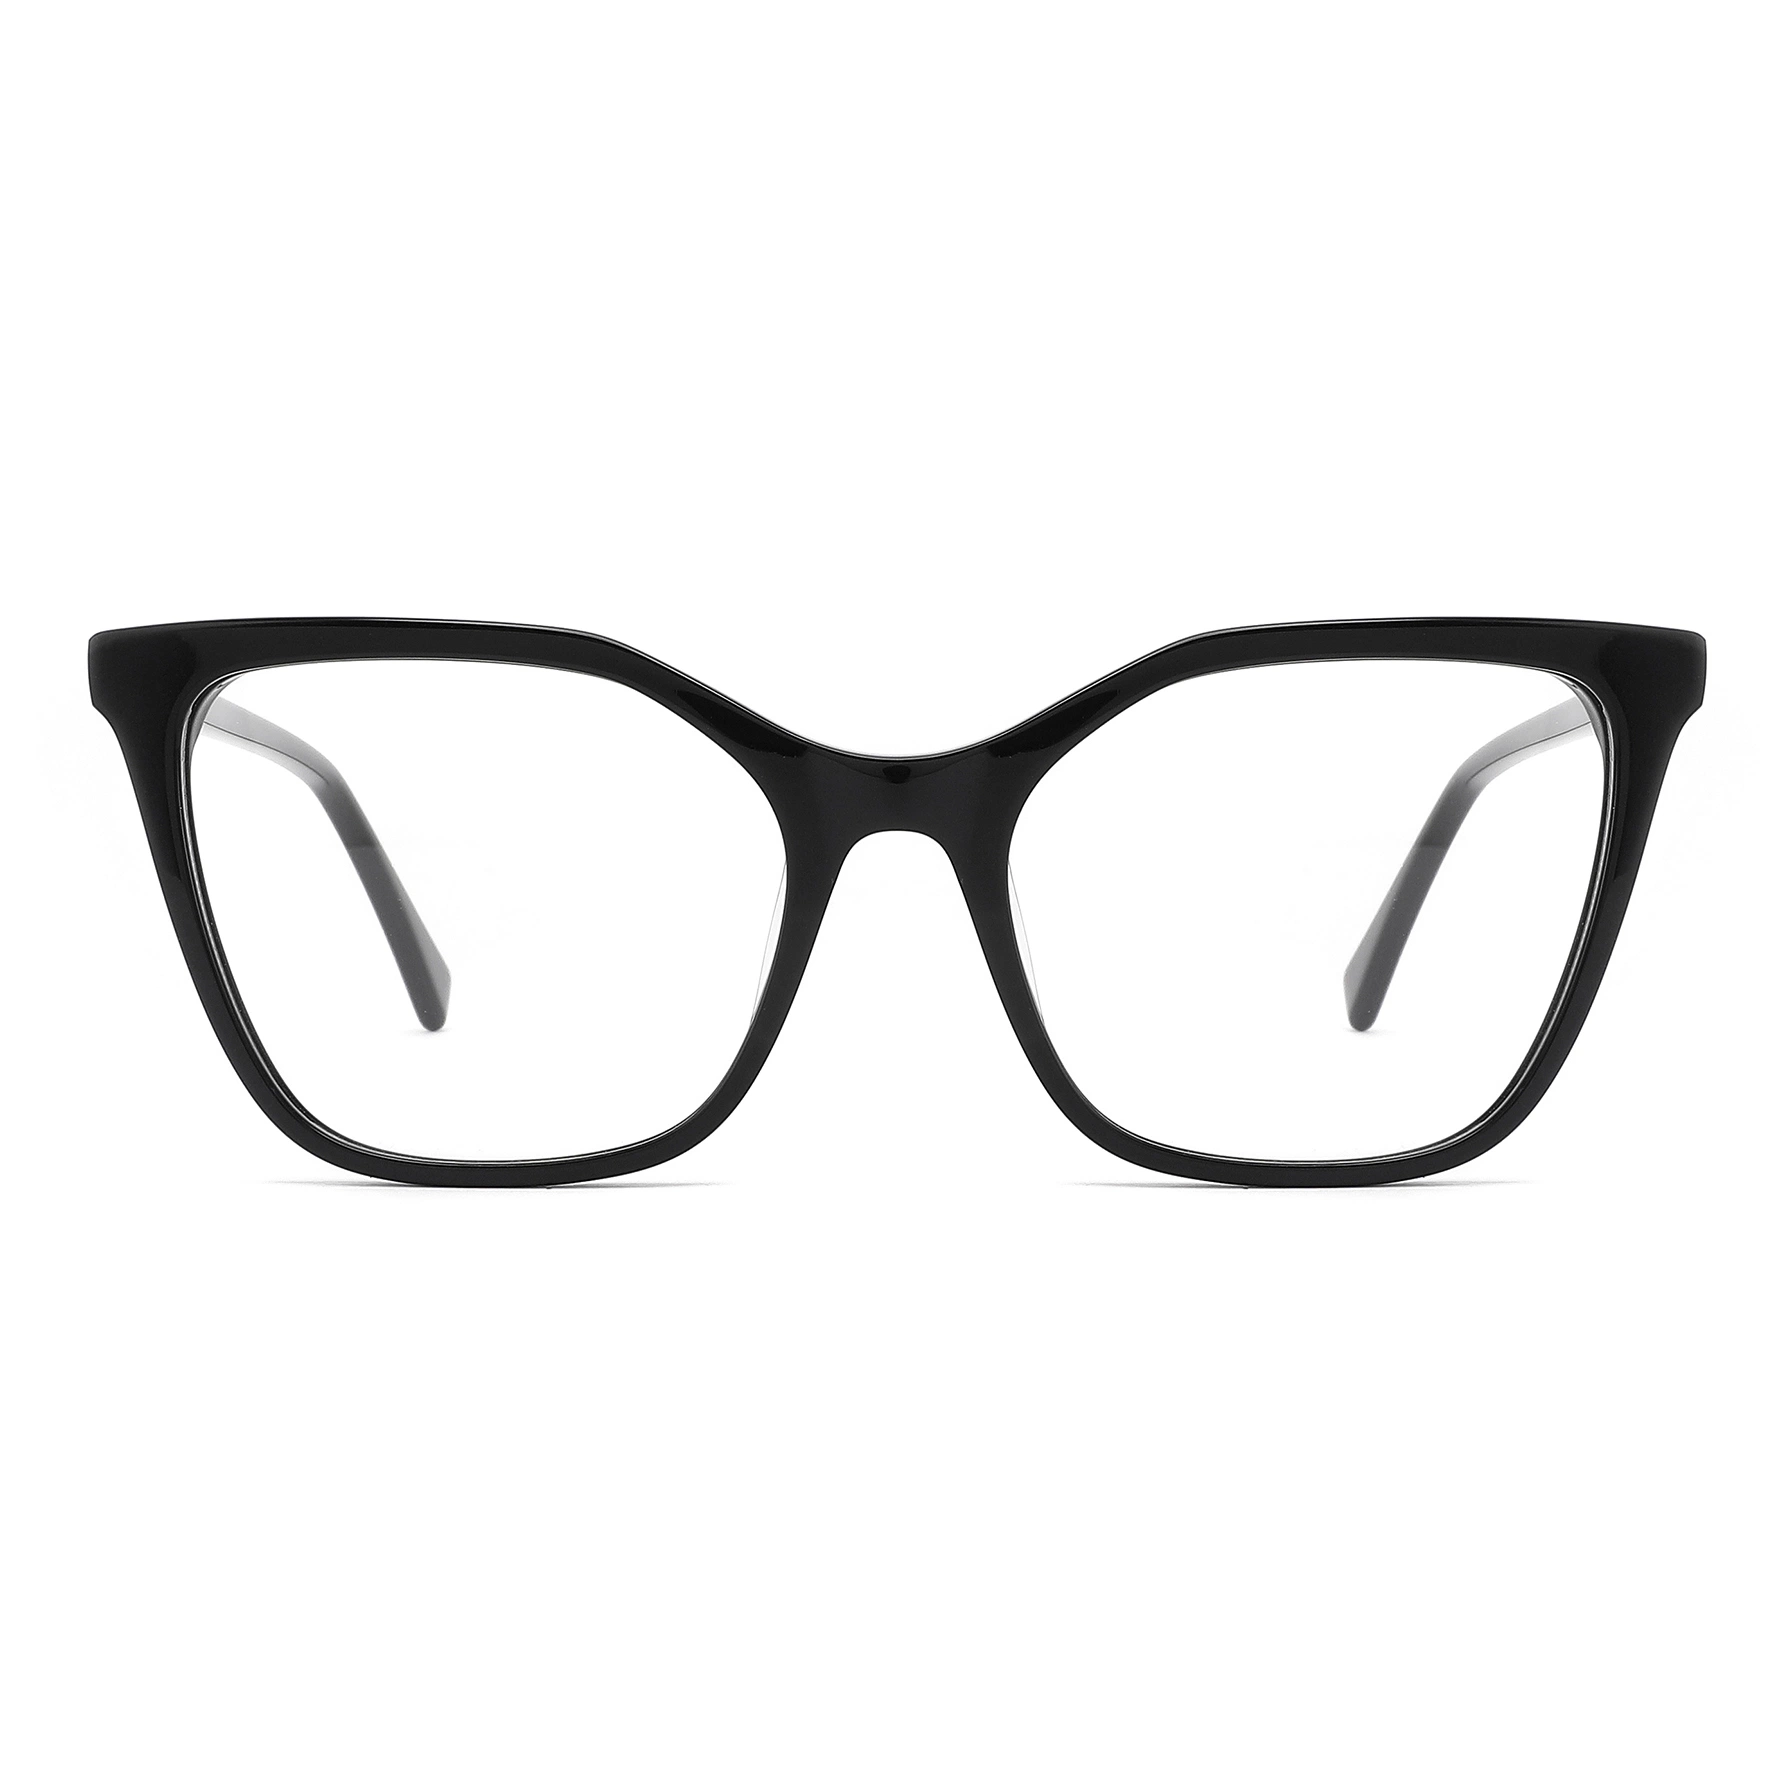 Nouveau modèle de lunettes de vue rétro à motif de tortue en acétate pour femmes, avec monture optique en métal et acétate.